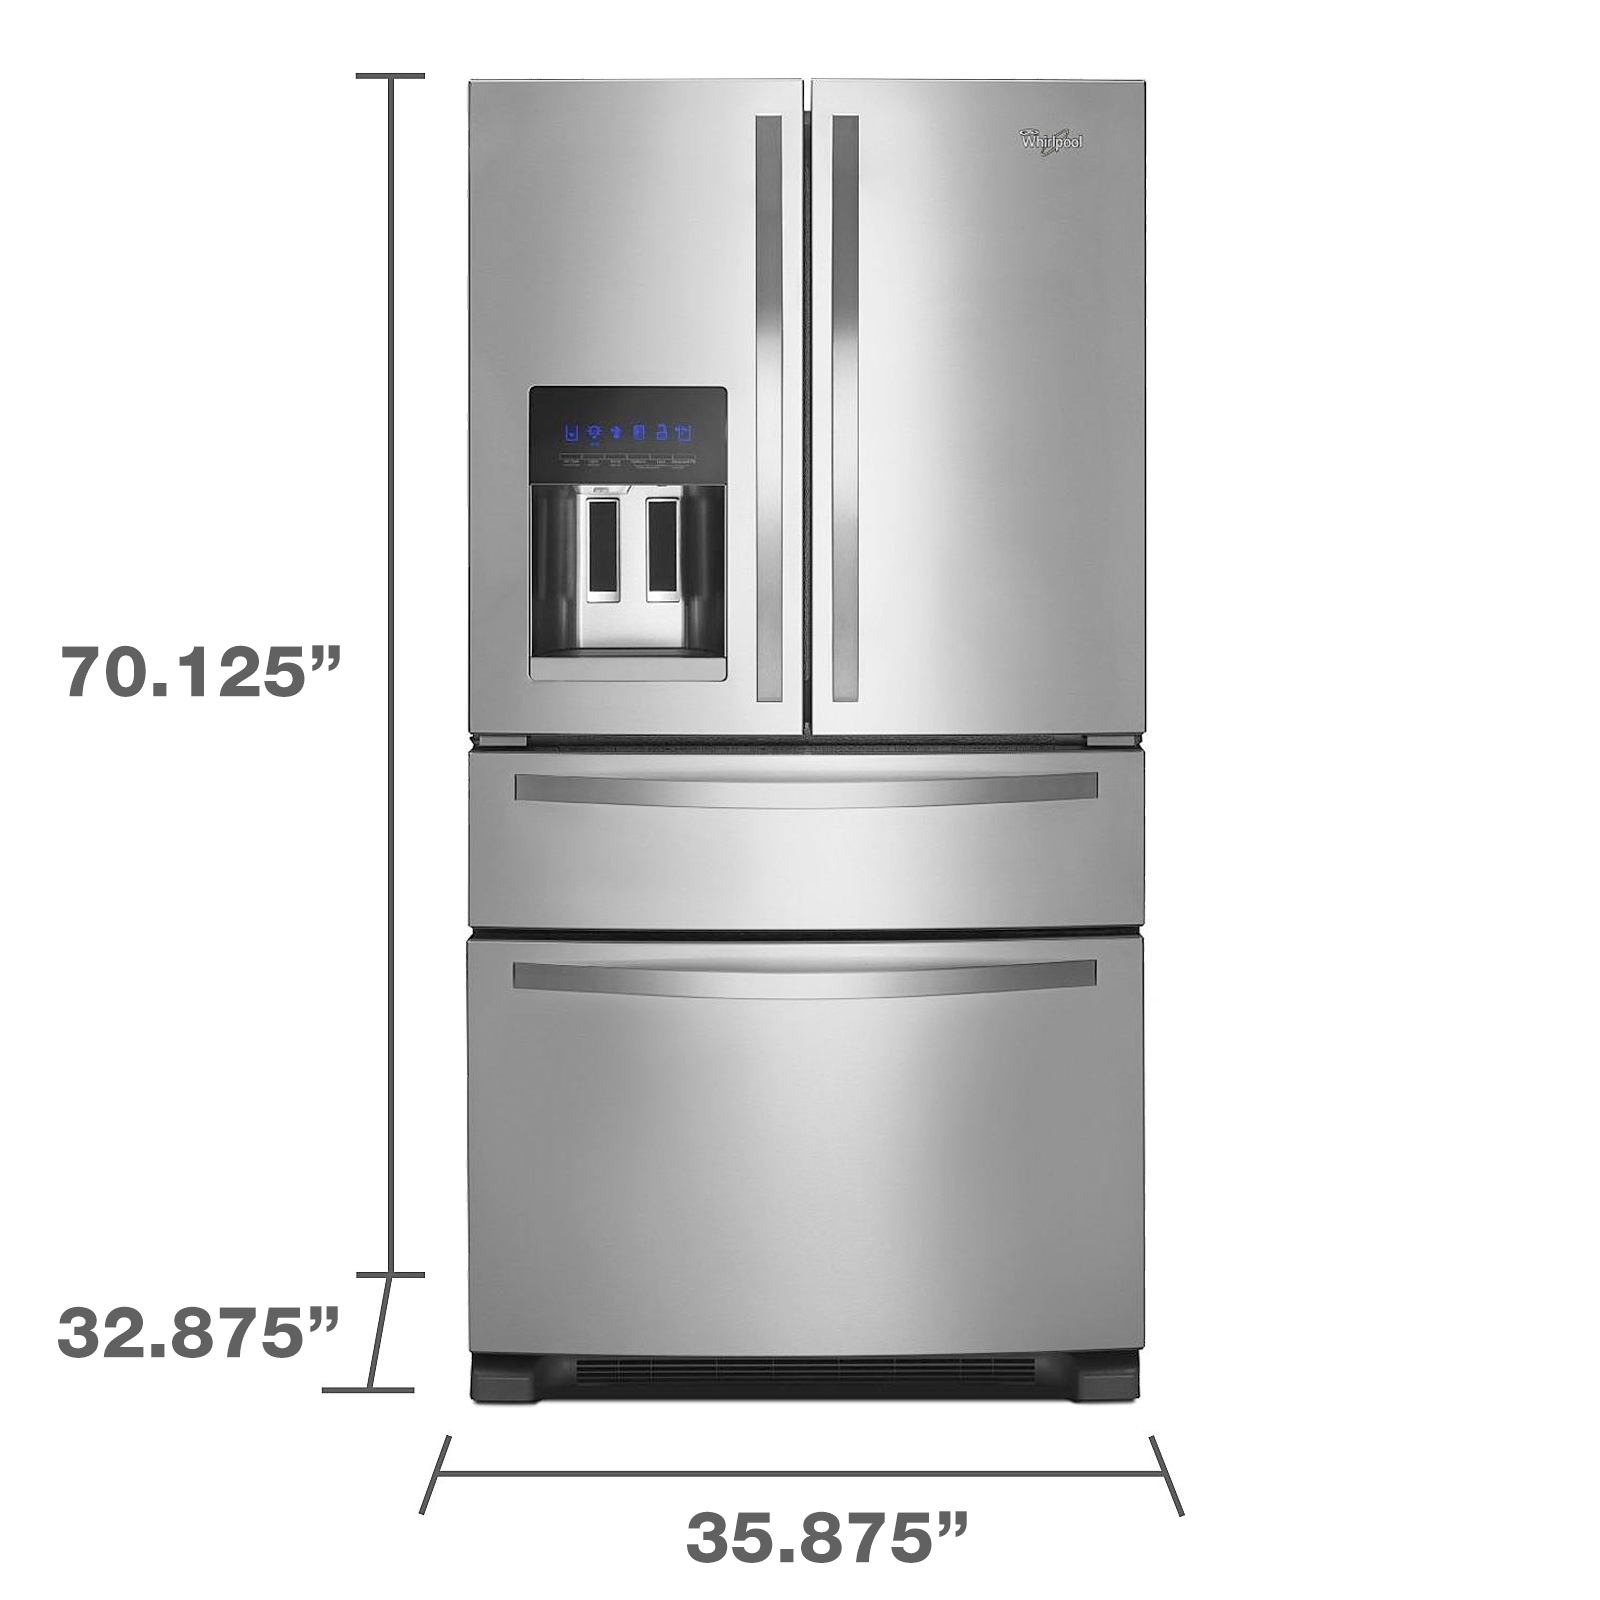 How do you price a used refrigerator?